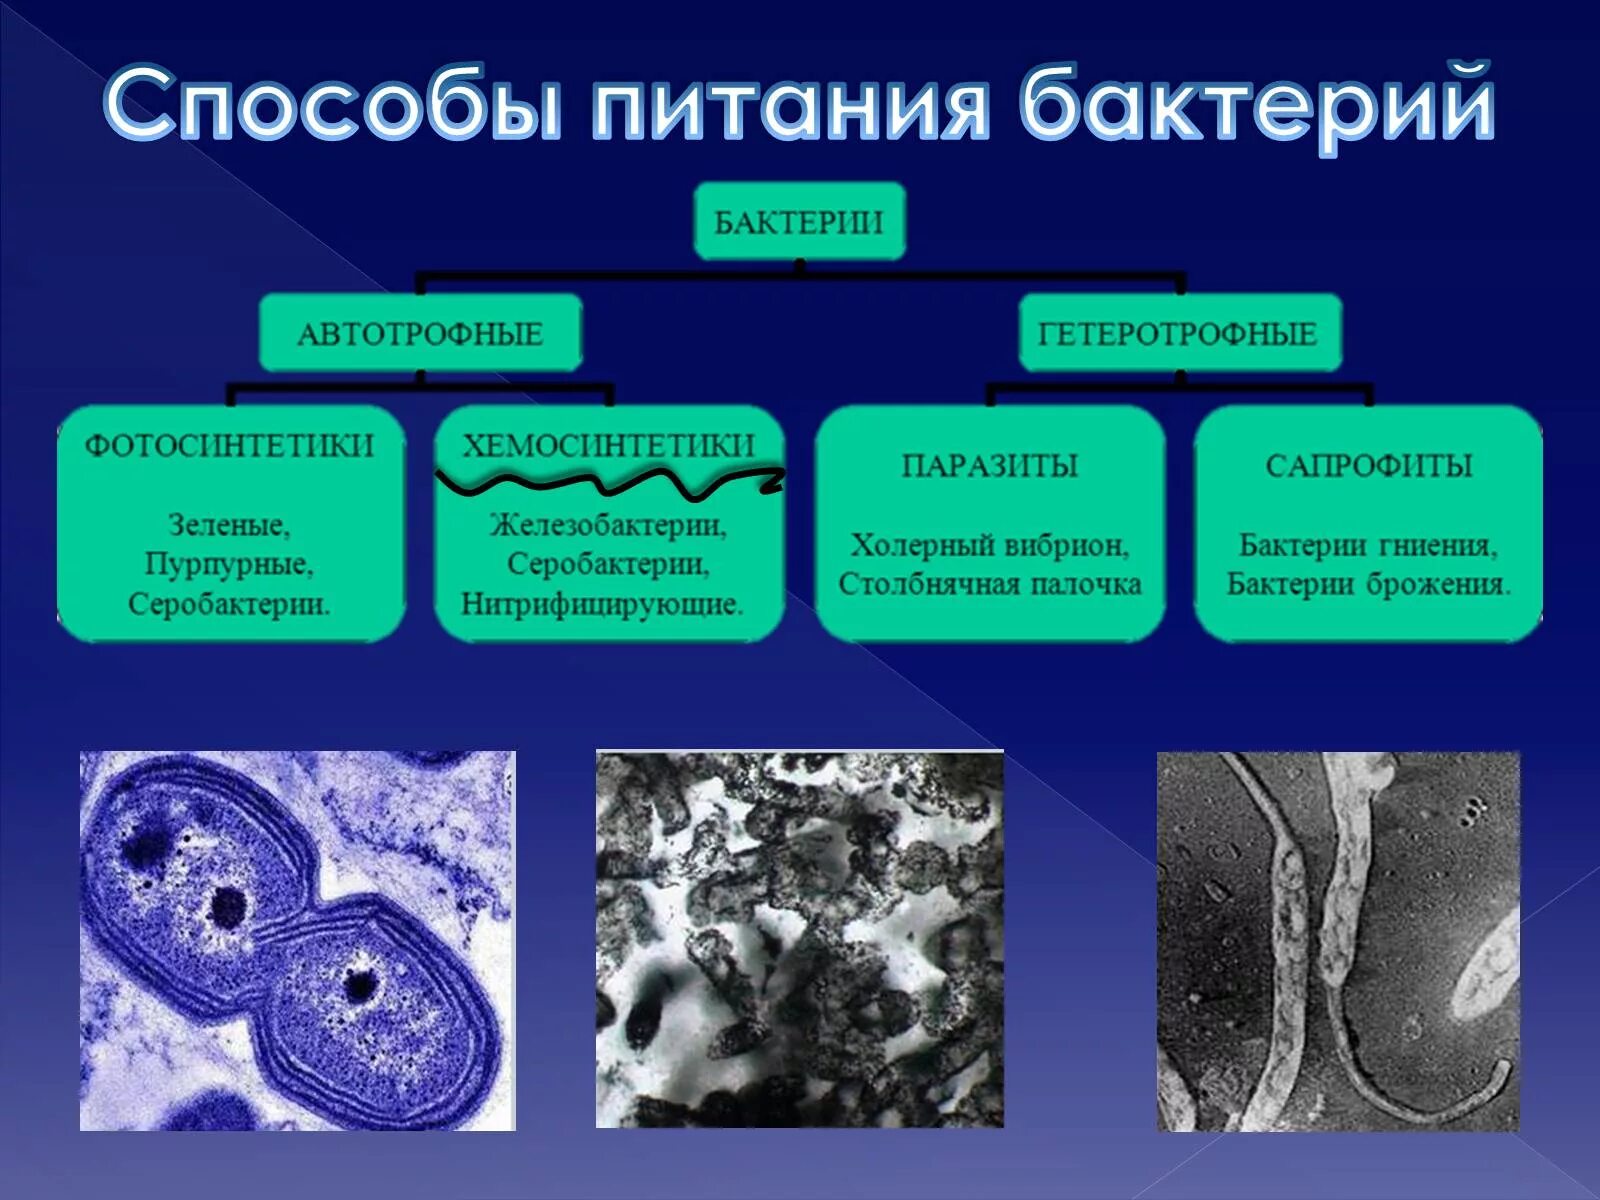 Группа автотрофных организмов. Серобактерии хемотрофы. Бактерии хемосинтетики. Организмы хемосинтетики. Питание бактерий хемосинтетики.